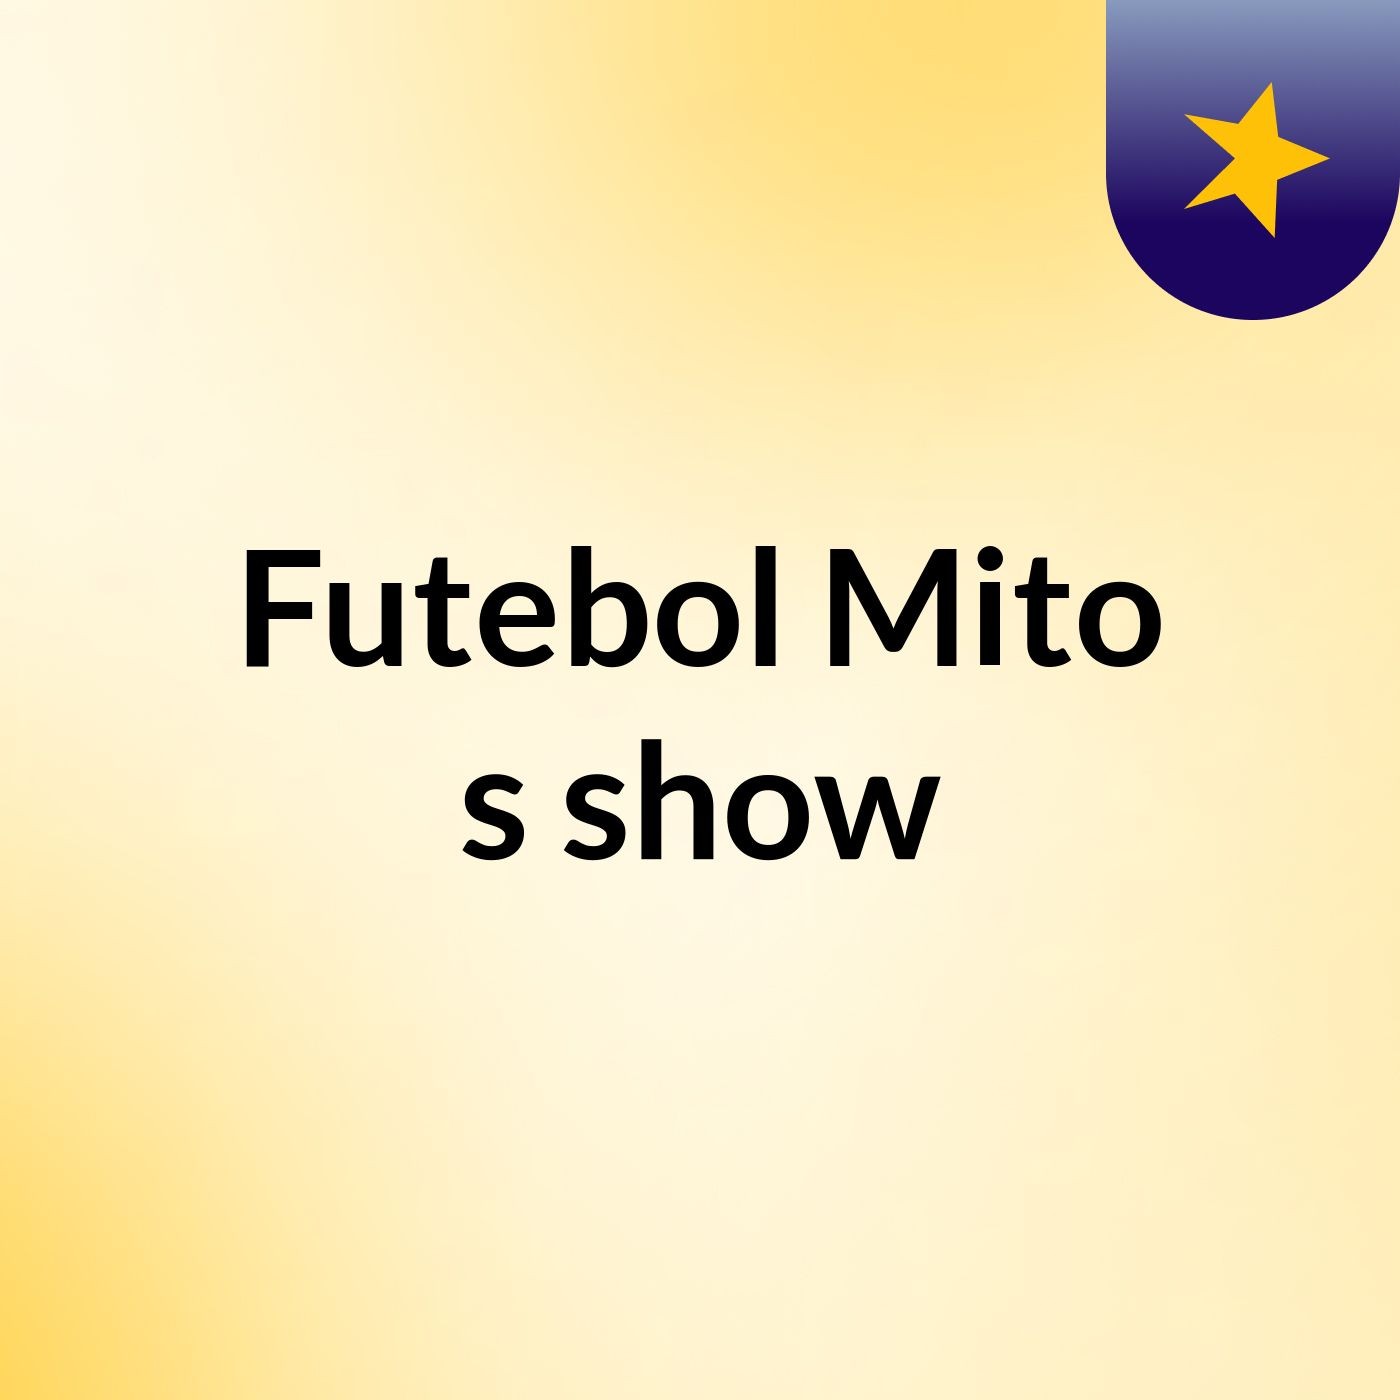 Futebol Mito's show